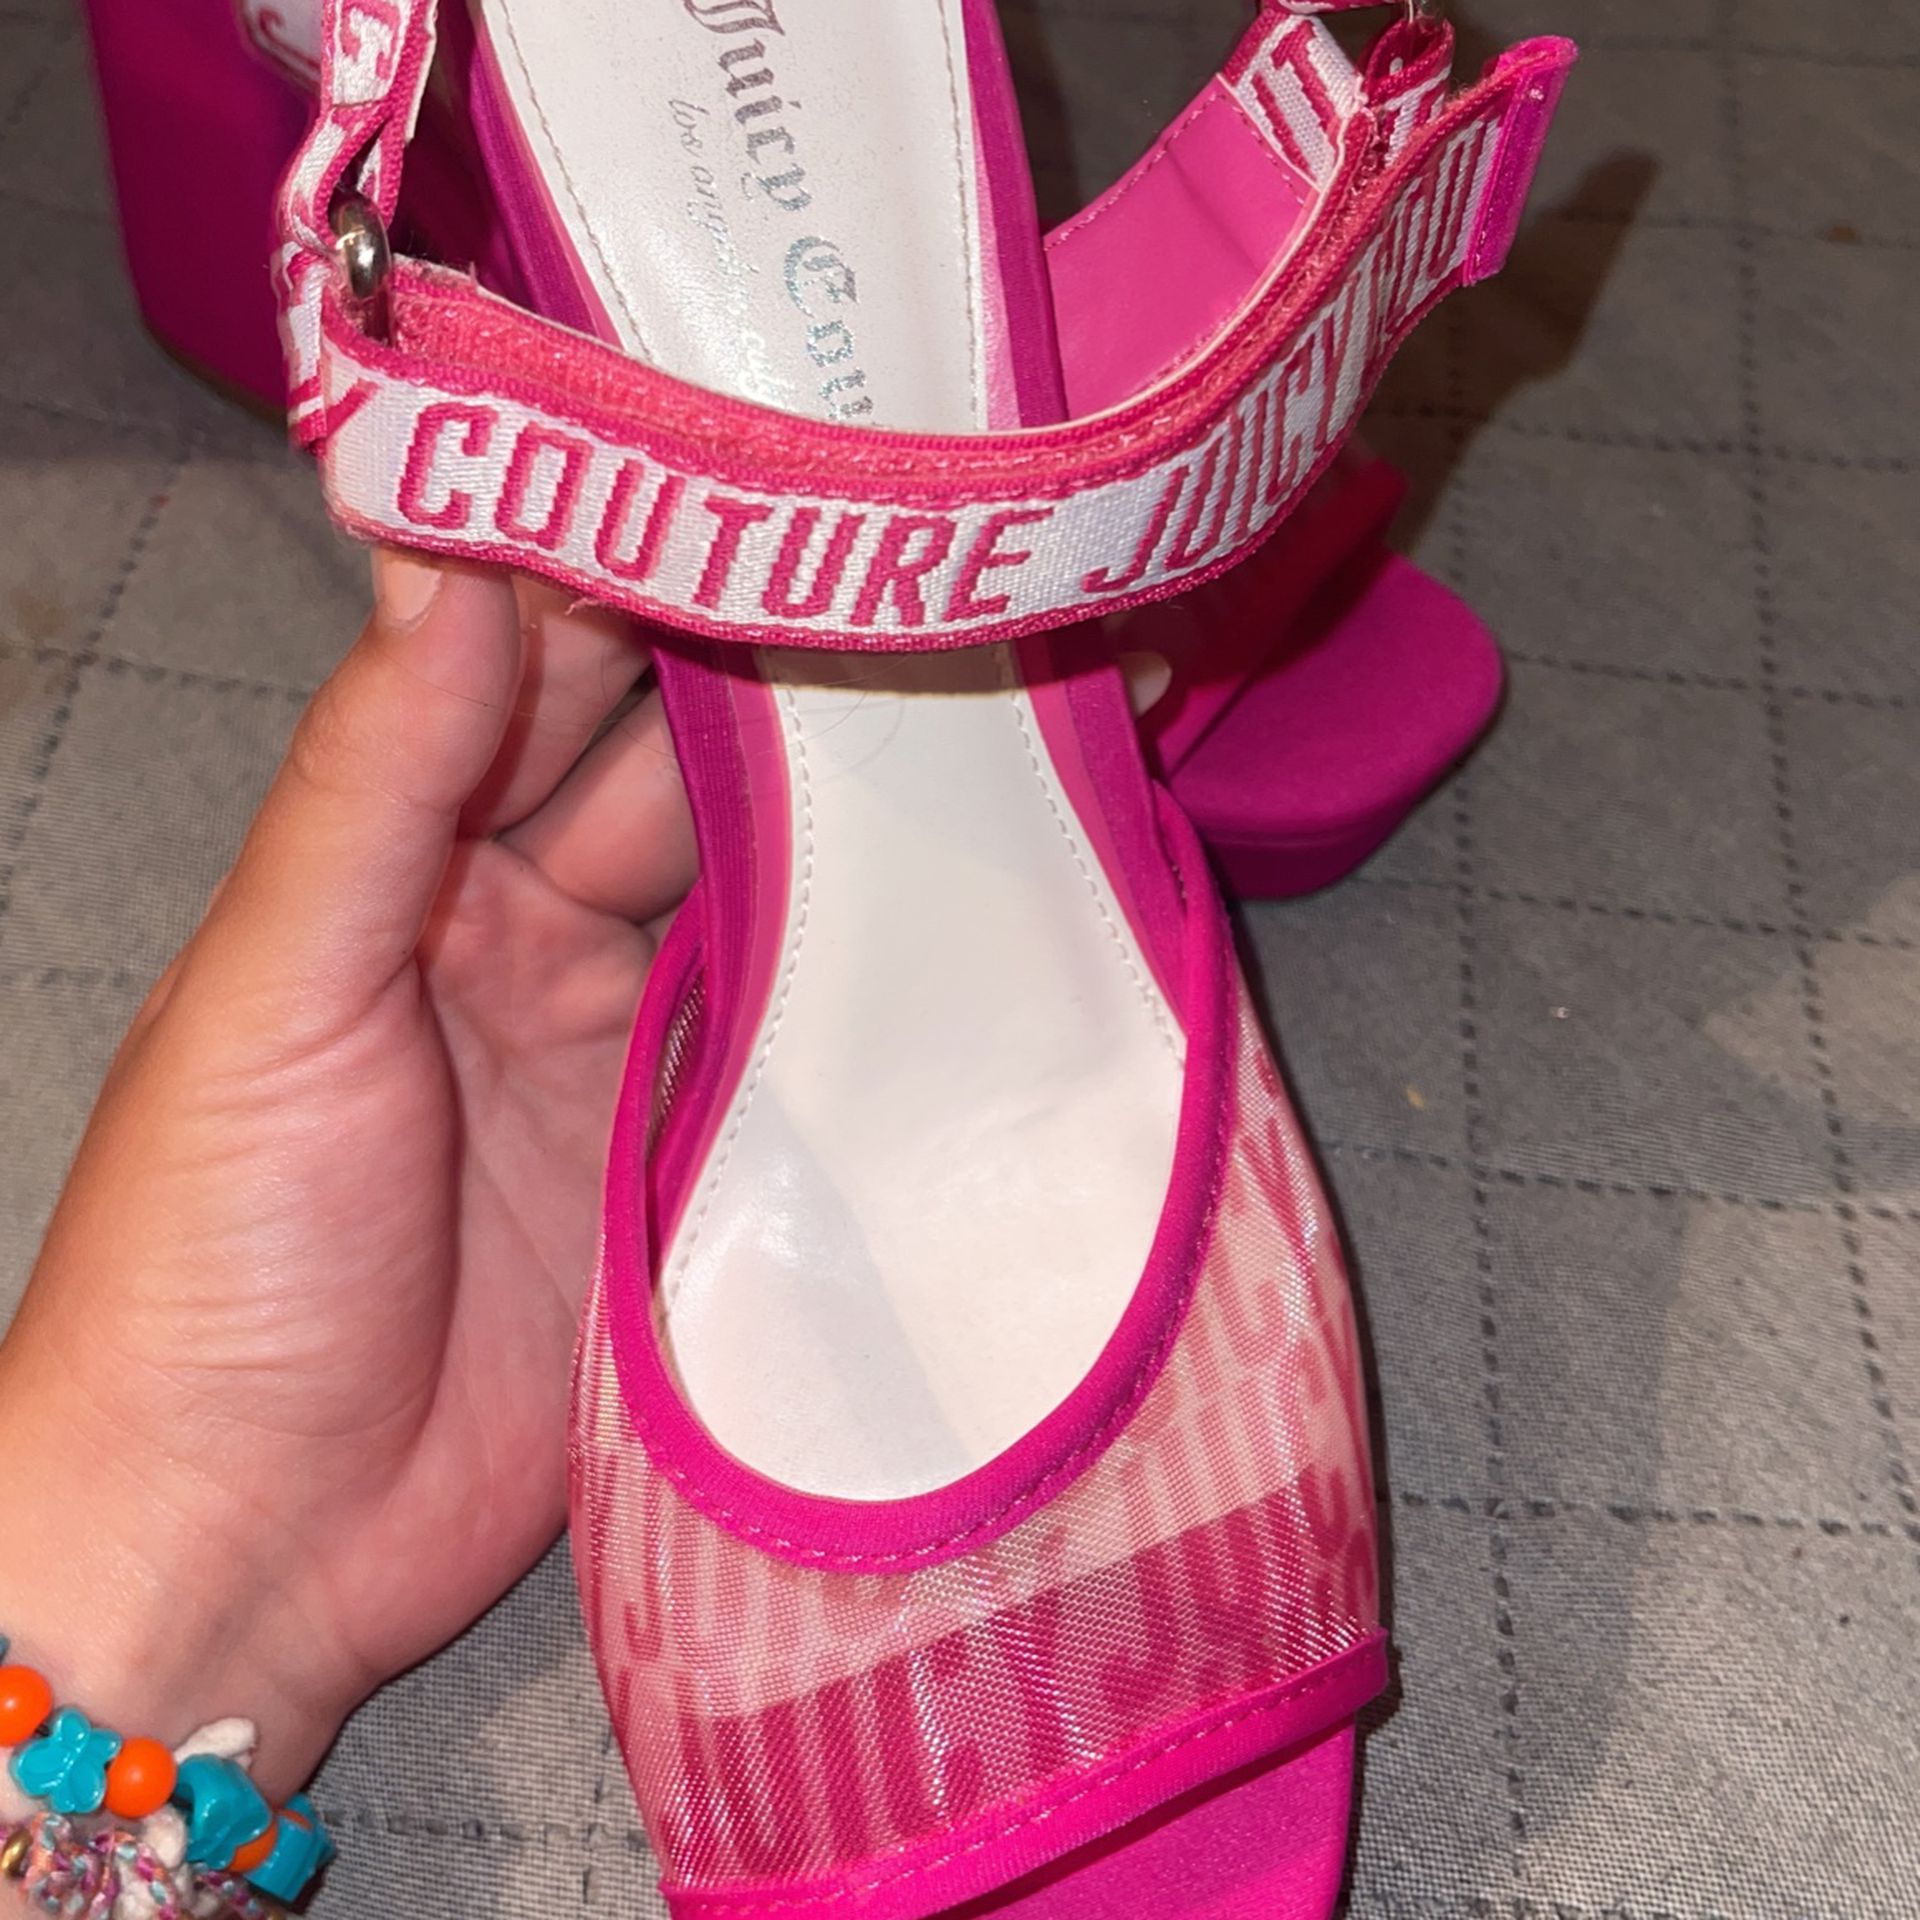 Pink Juicy Couture Heels 